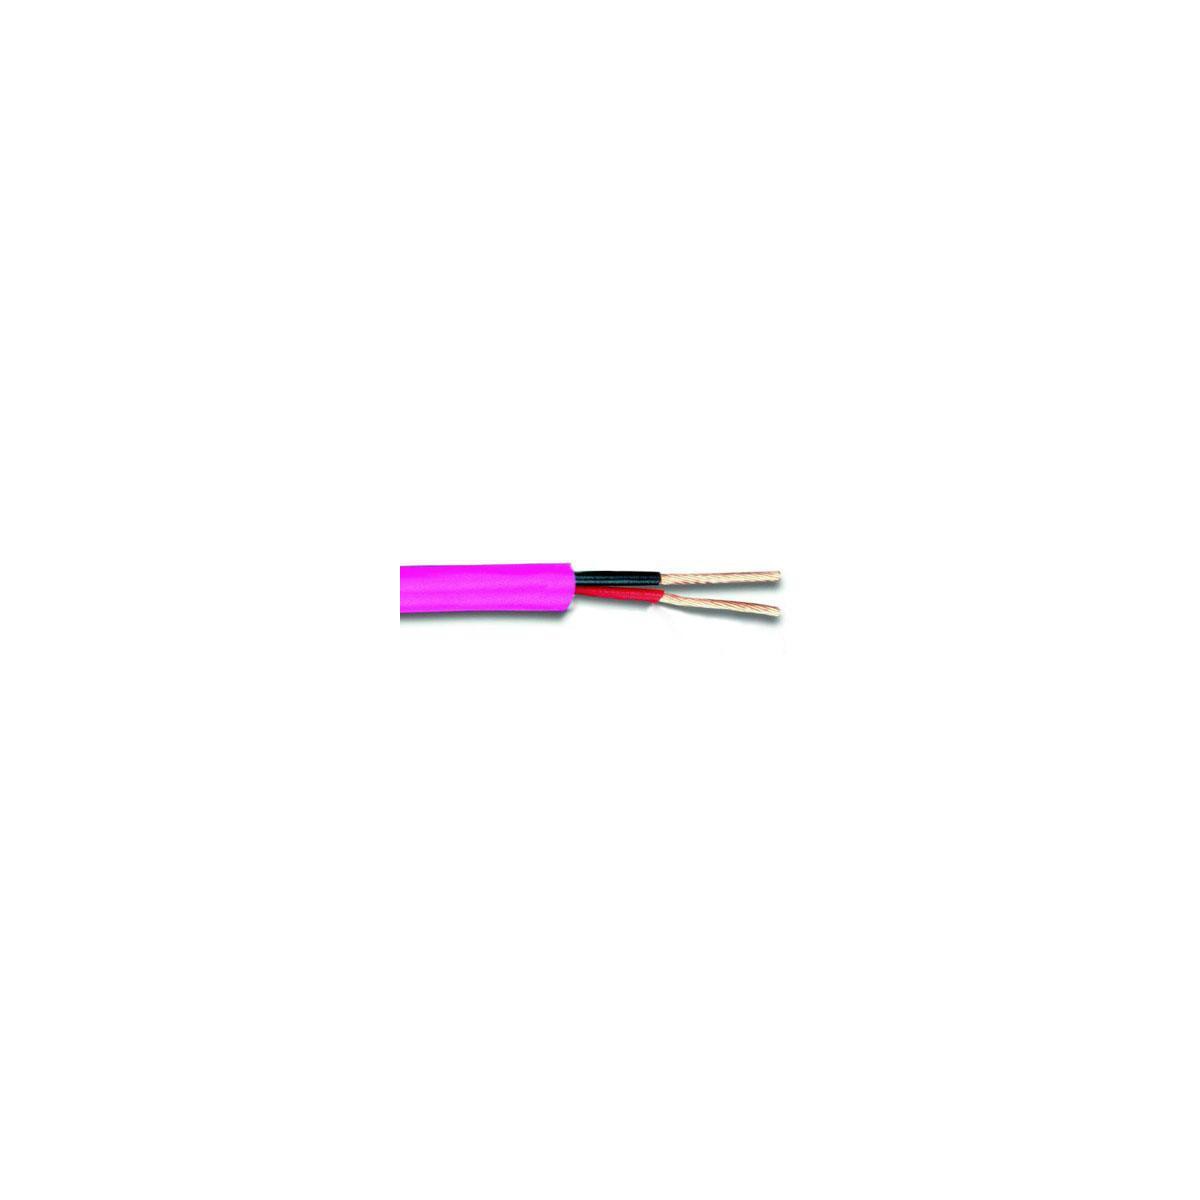 reproduktorový kabel - špulka QE4010 (QX16/2 100M)